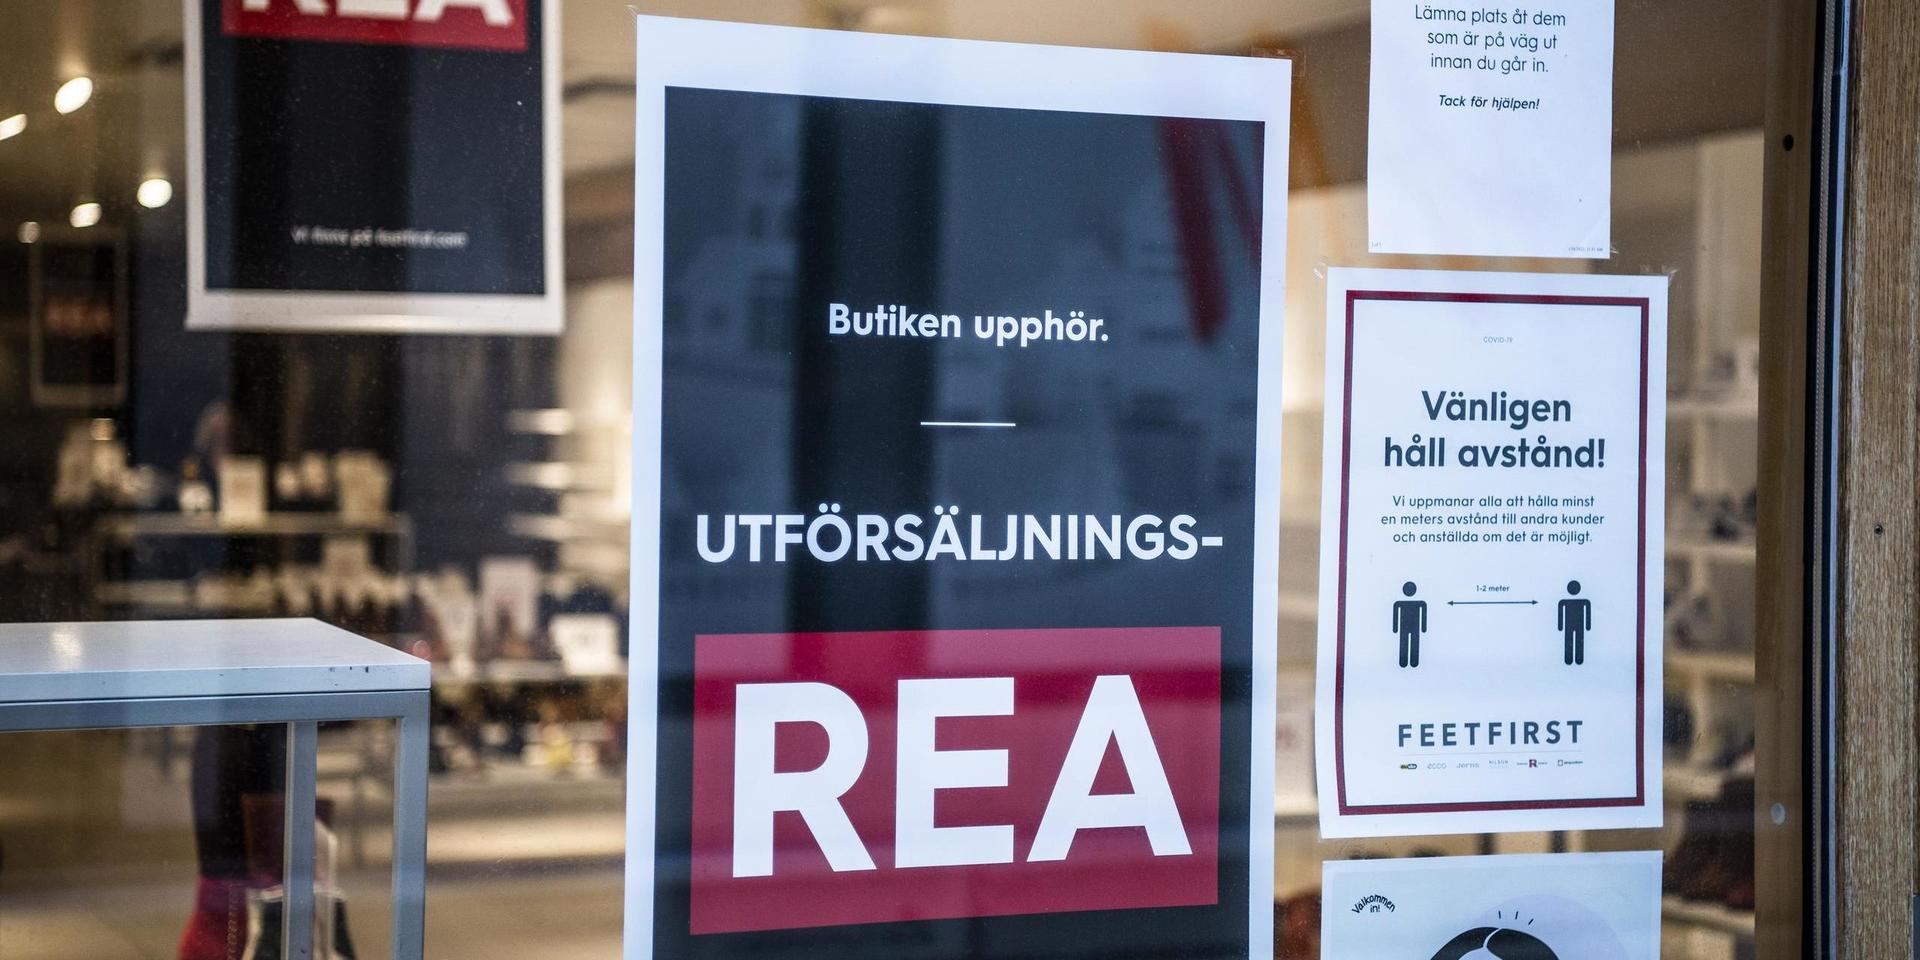 Bristande lönsamhet tvingar Nilson Group att stänga ett 50-tal butiker i landet. Skobutiken Nilson shoes på Kungsgatan i Göteborg har redan stäng, liksom en rad andra, bland annat den på Drottninggatan i Varberg.